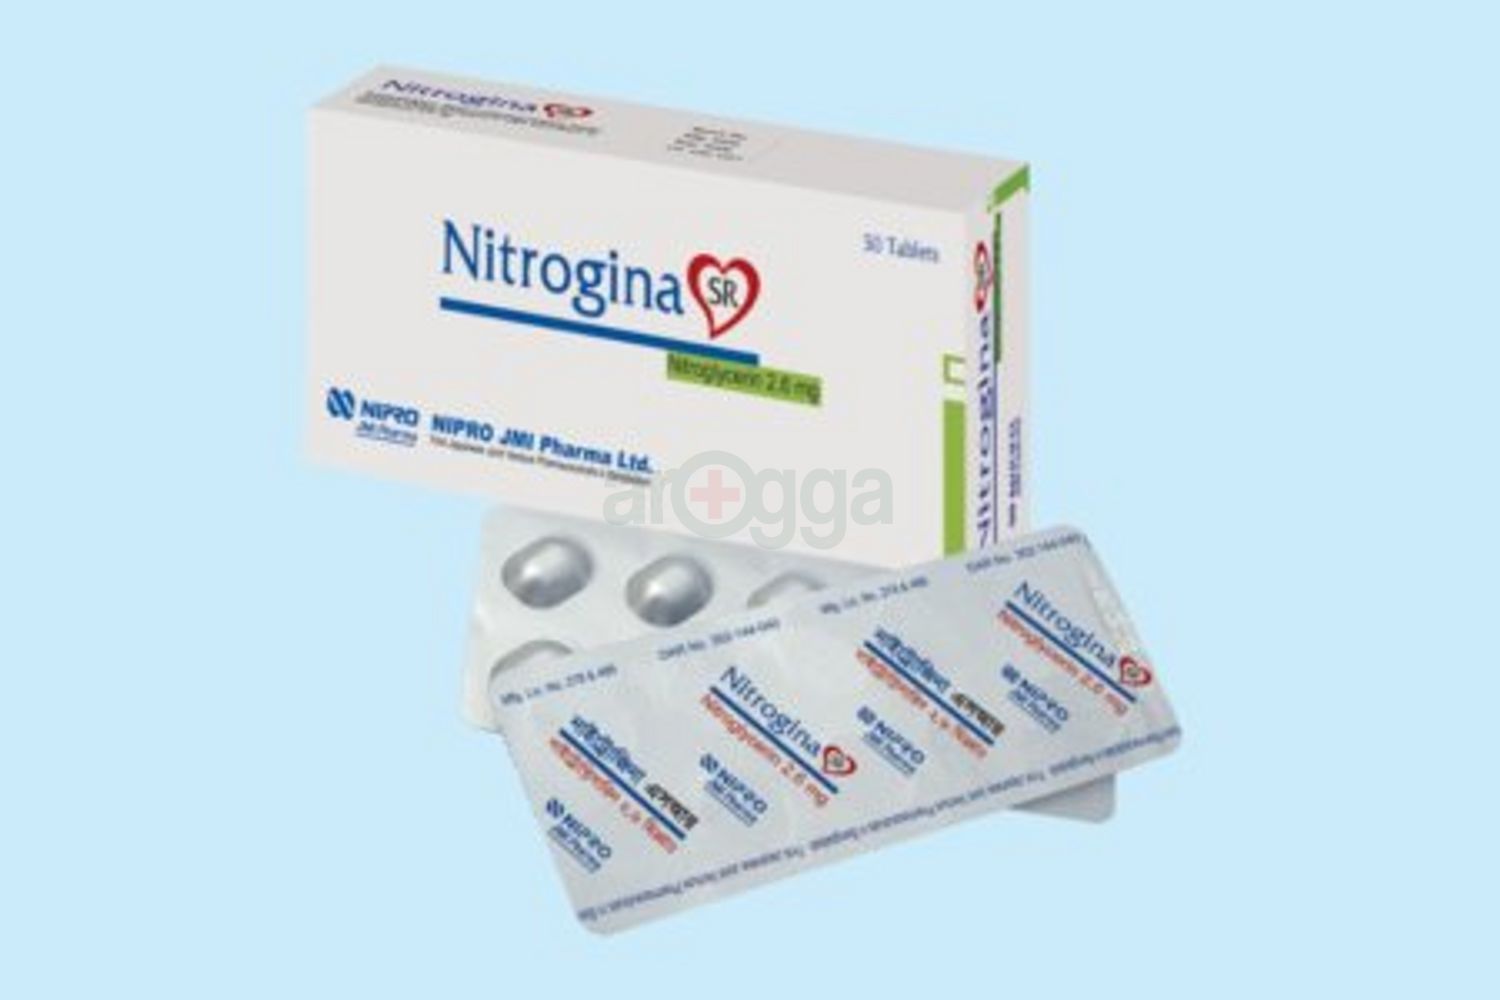 Nitrogina SR